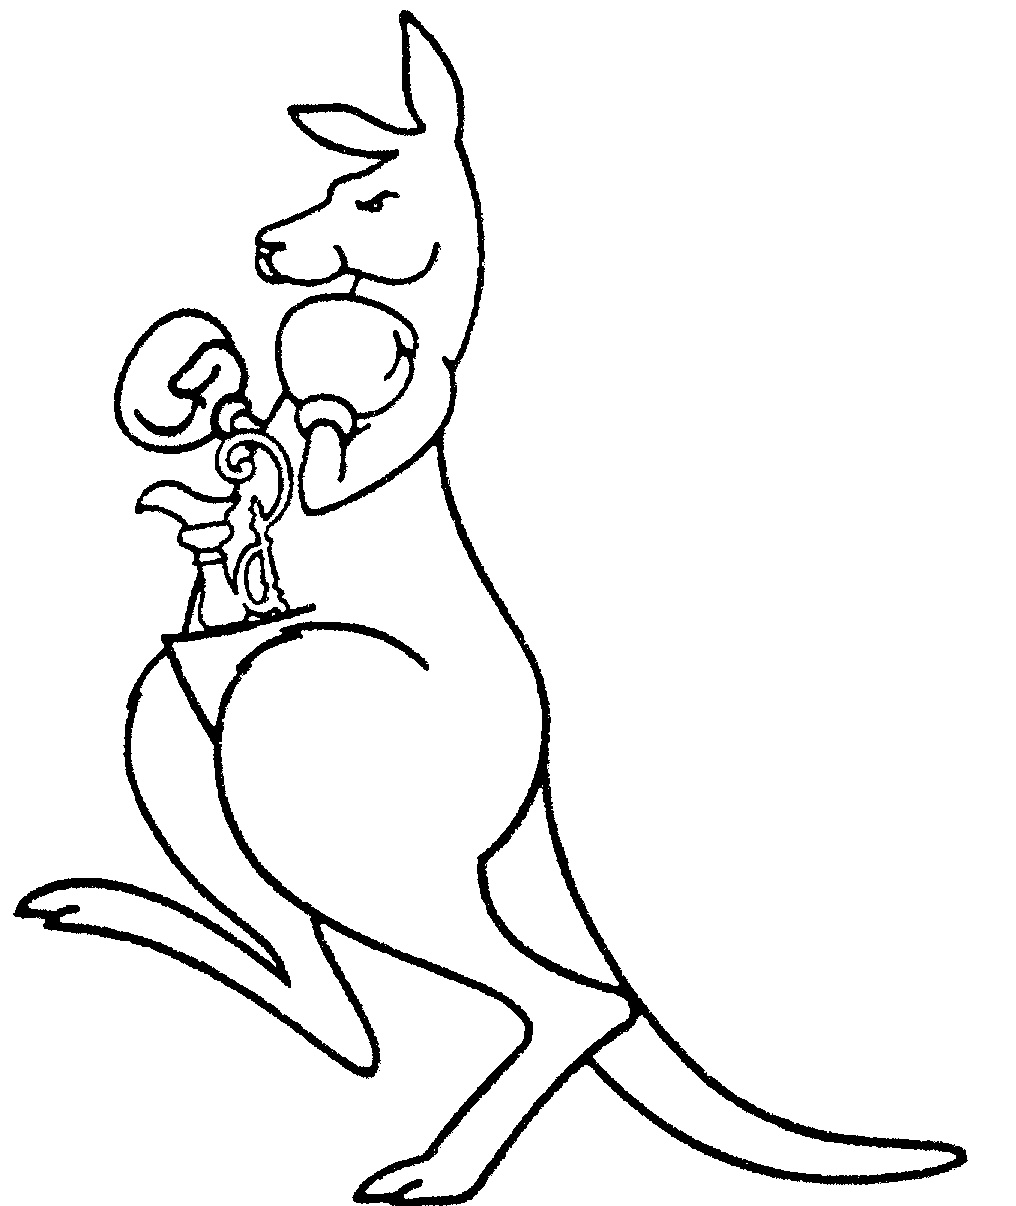 Kangaroo Rat Drawing